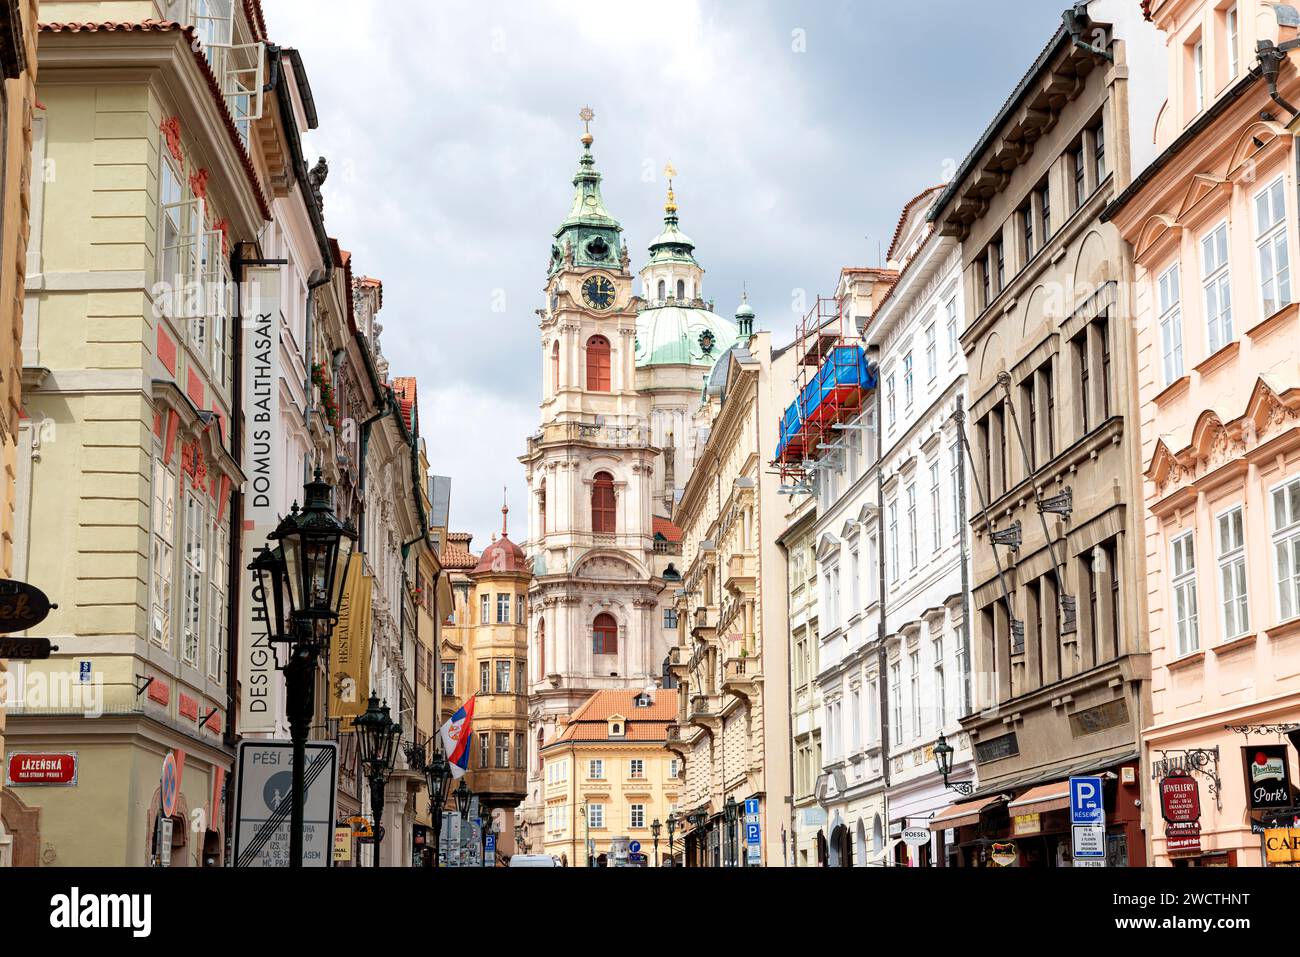 Photographie prise à Prague, République tchèque, capturant une vue des monuments classiques et anciens de la ville Banque D'Images